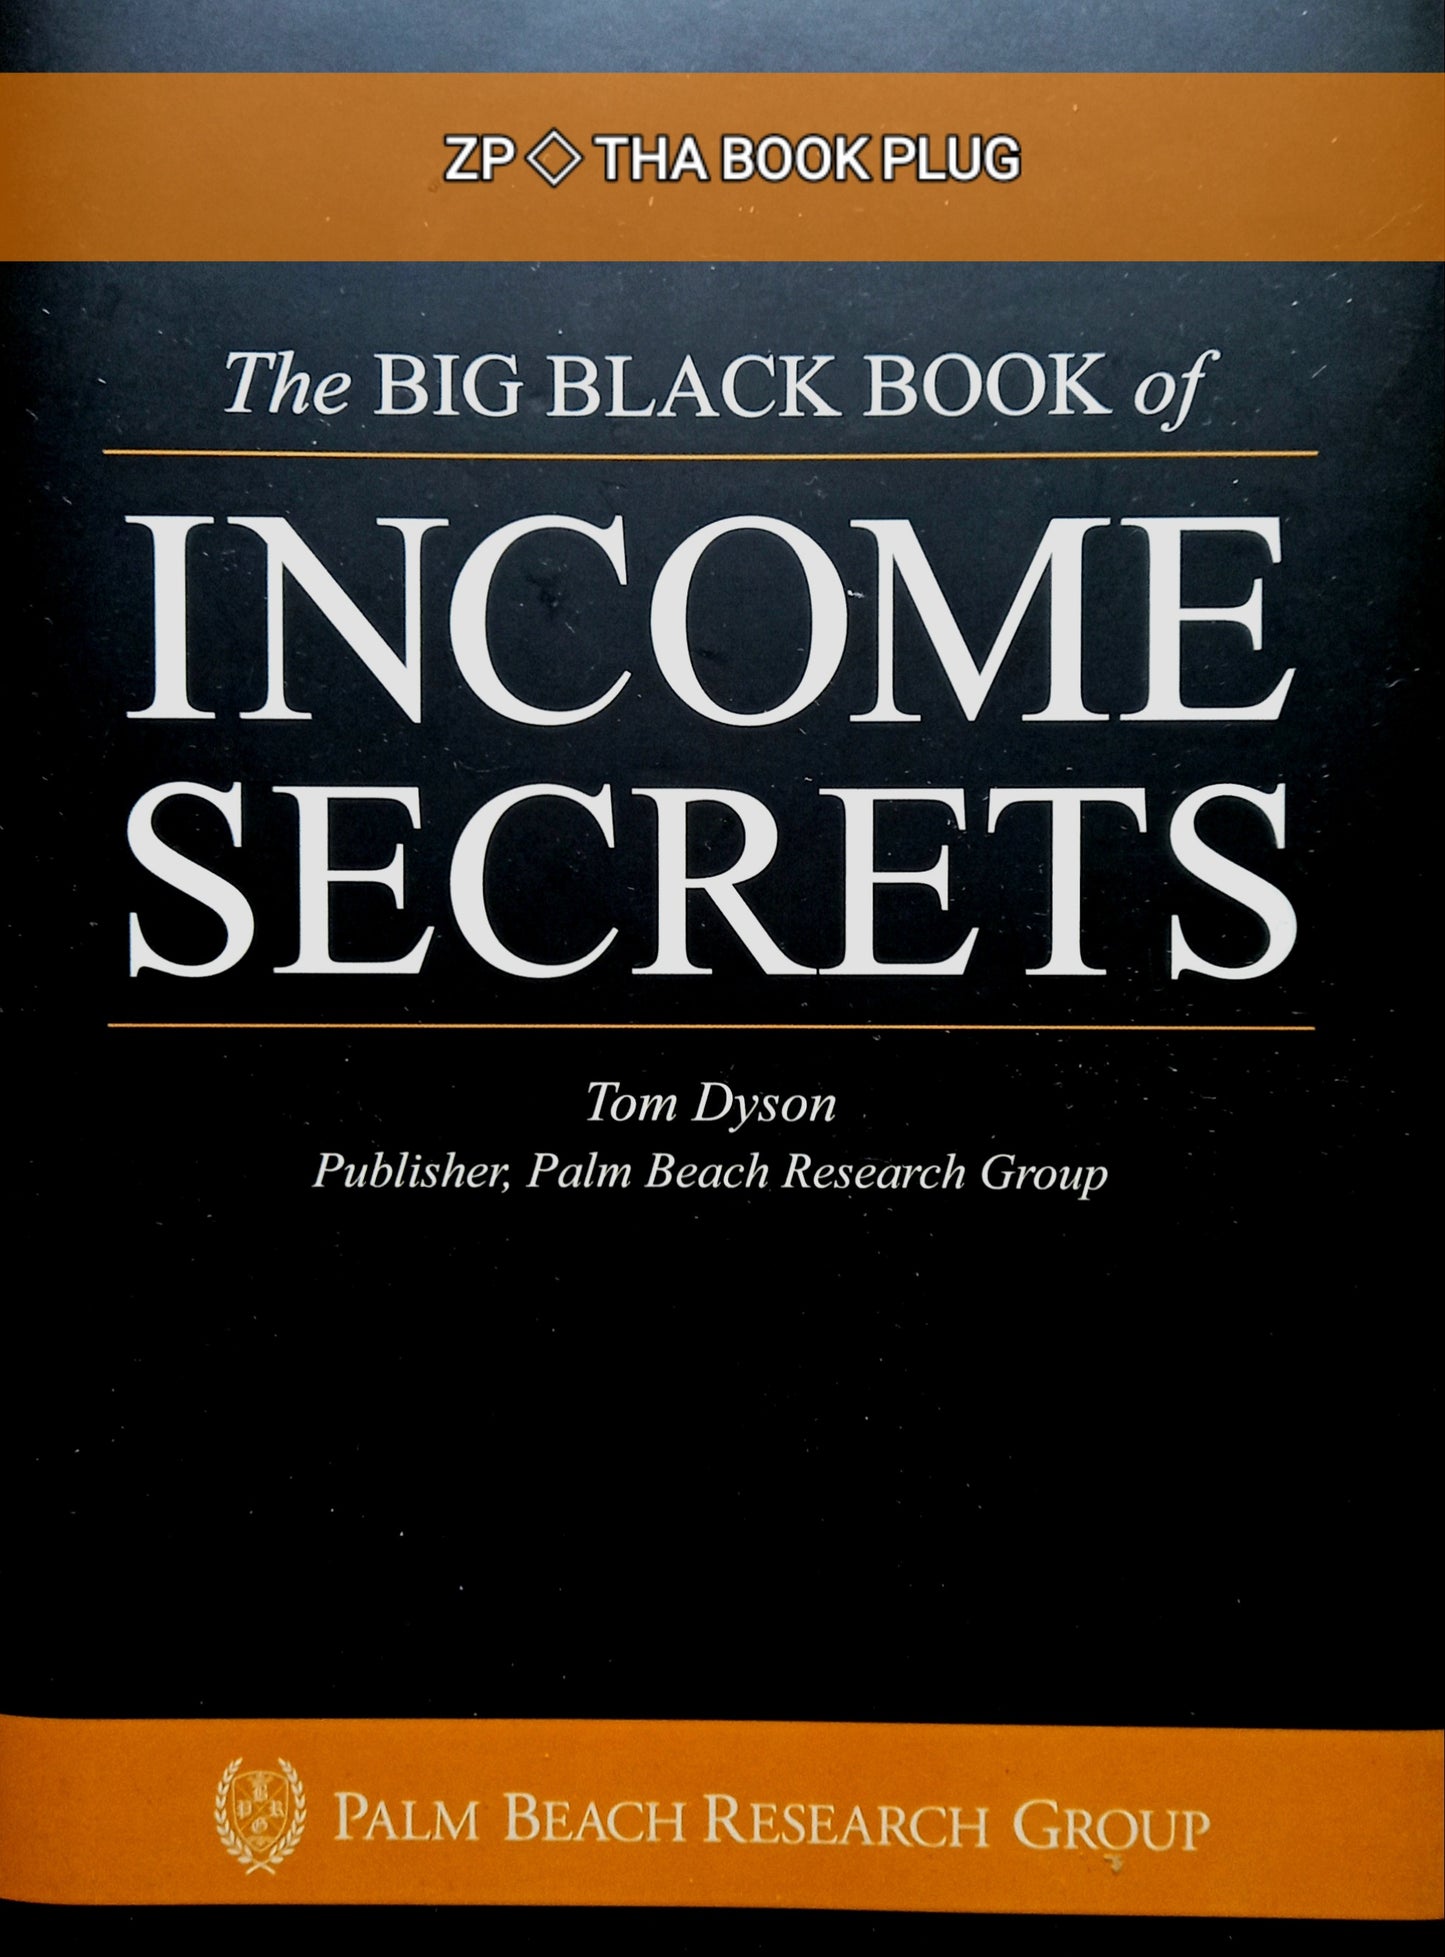 Income Secrets